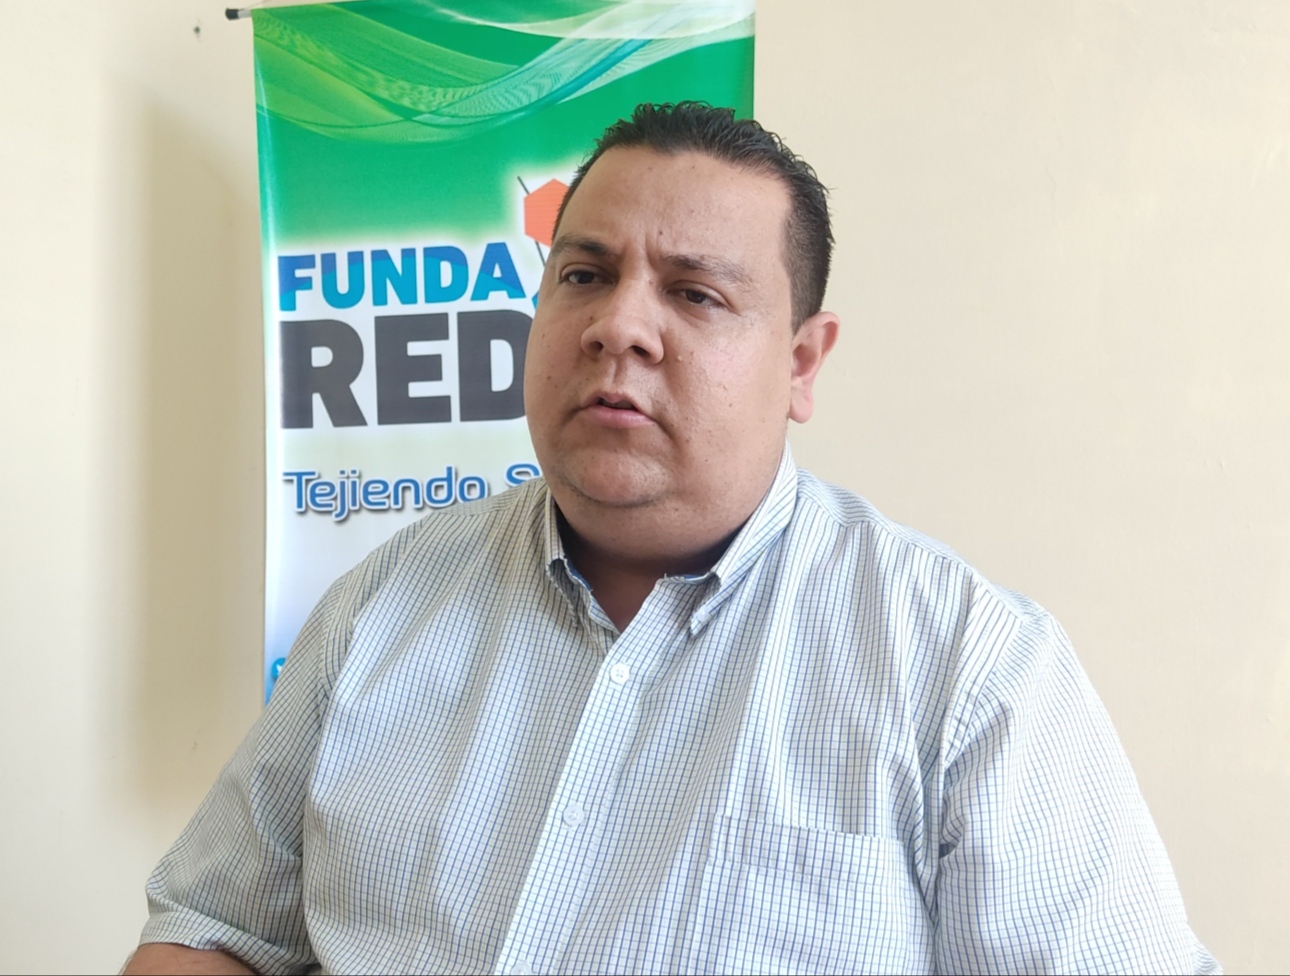 FundaRedes exigió la libertad de Javier Tarazona, cinco meses secuestrado por el chavismo